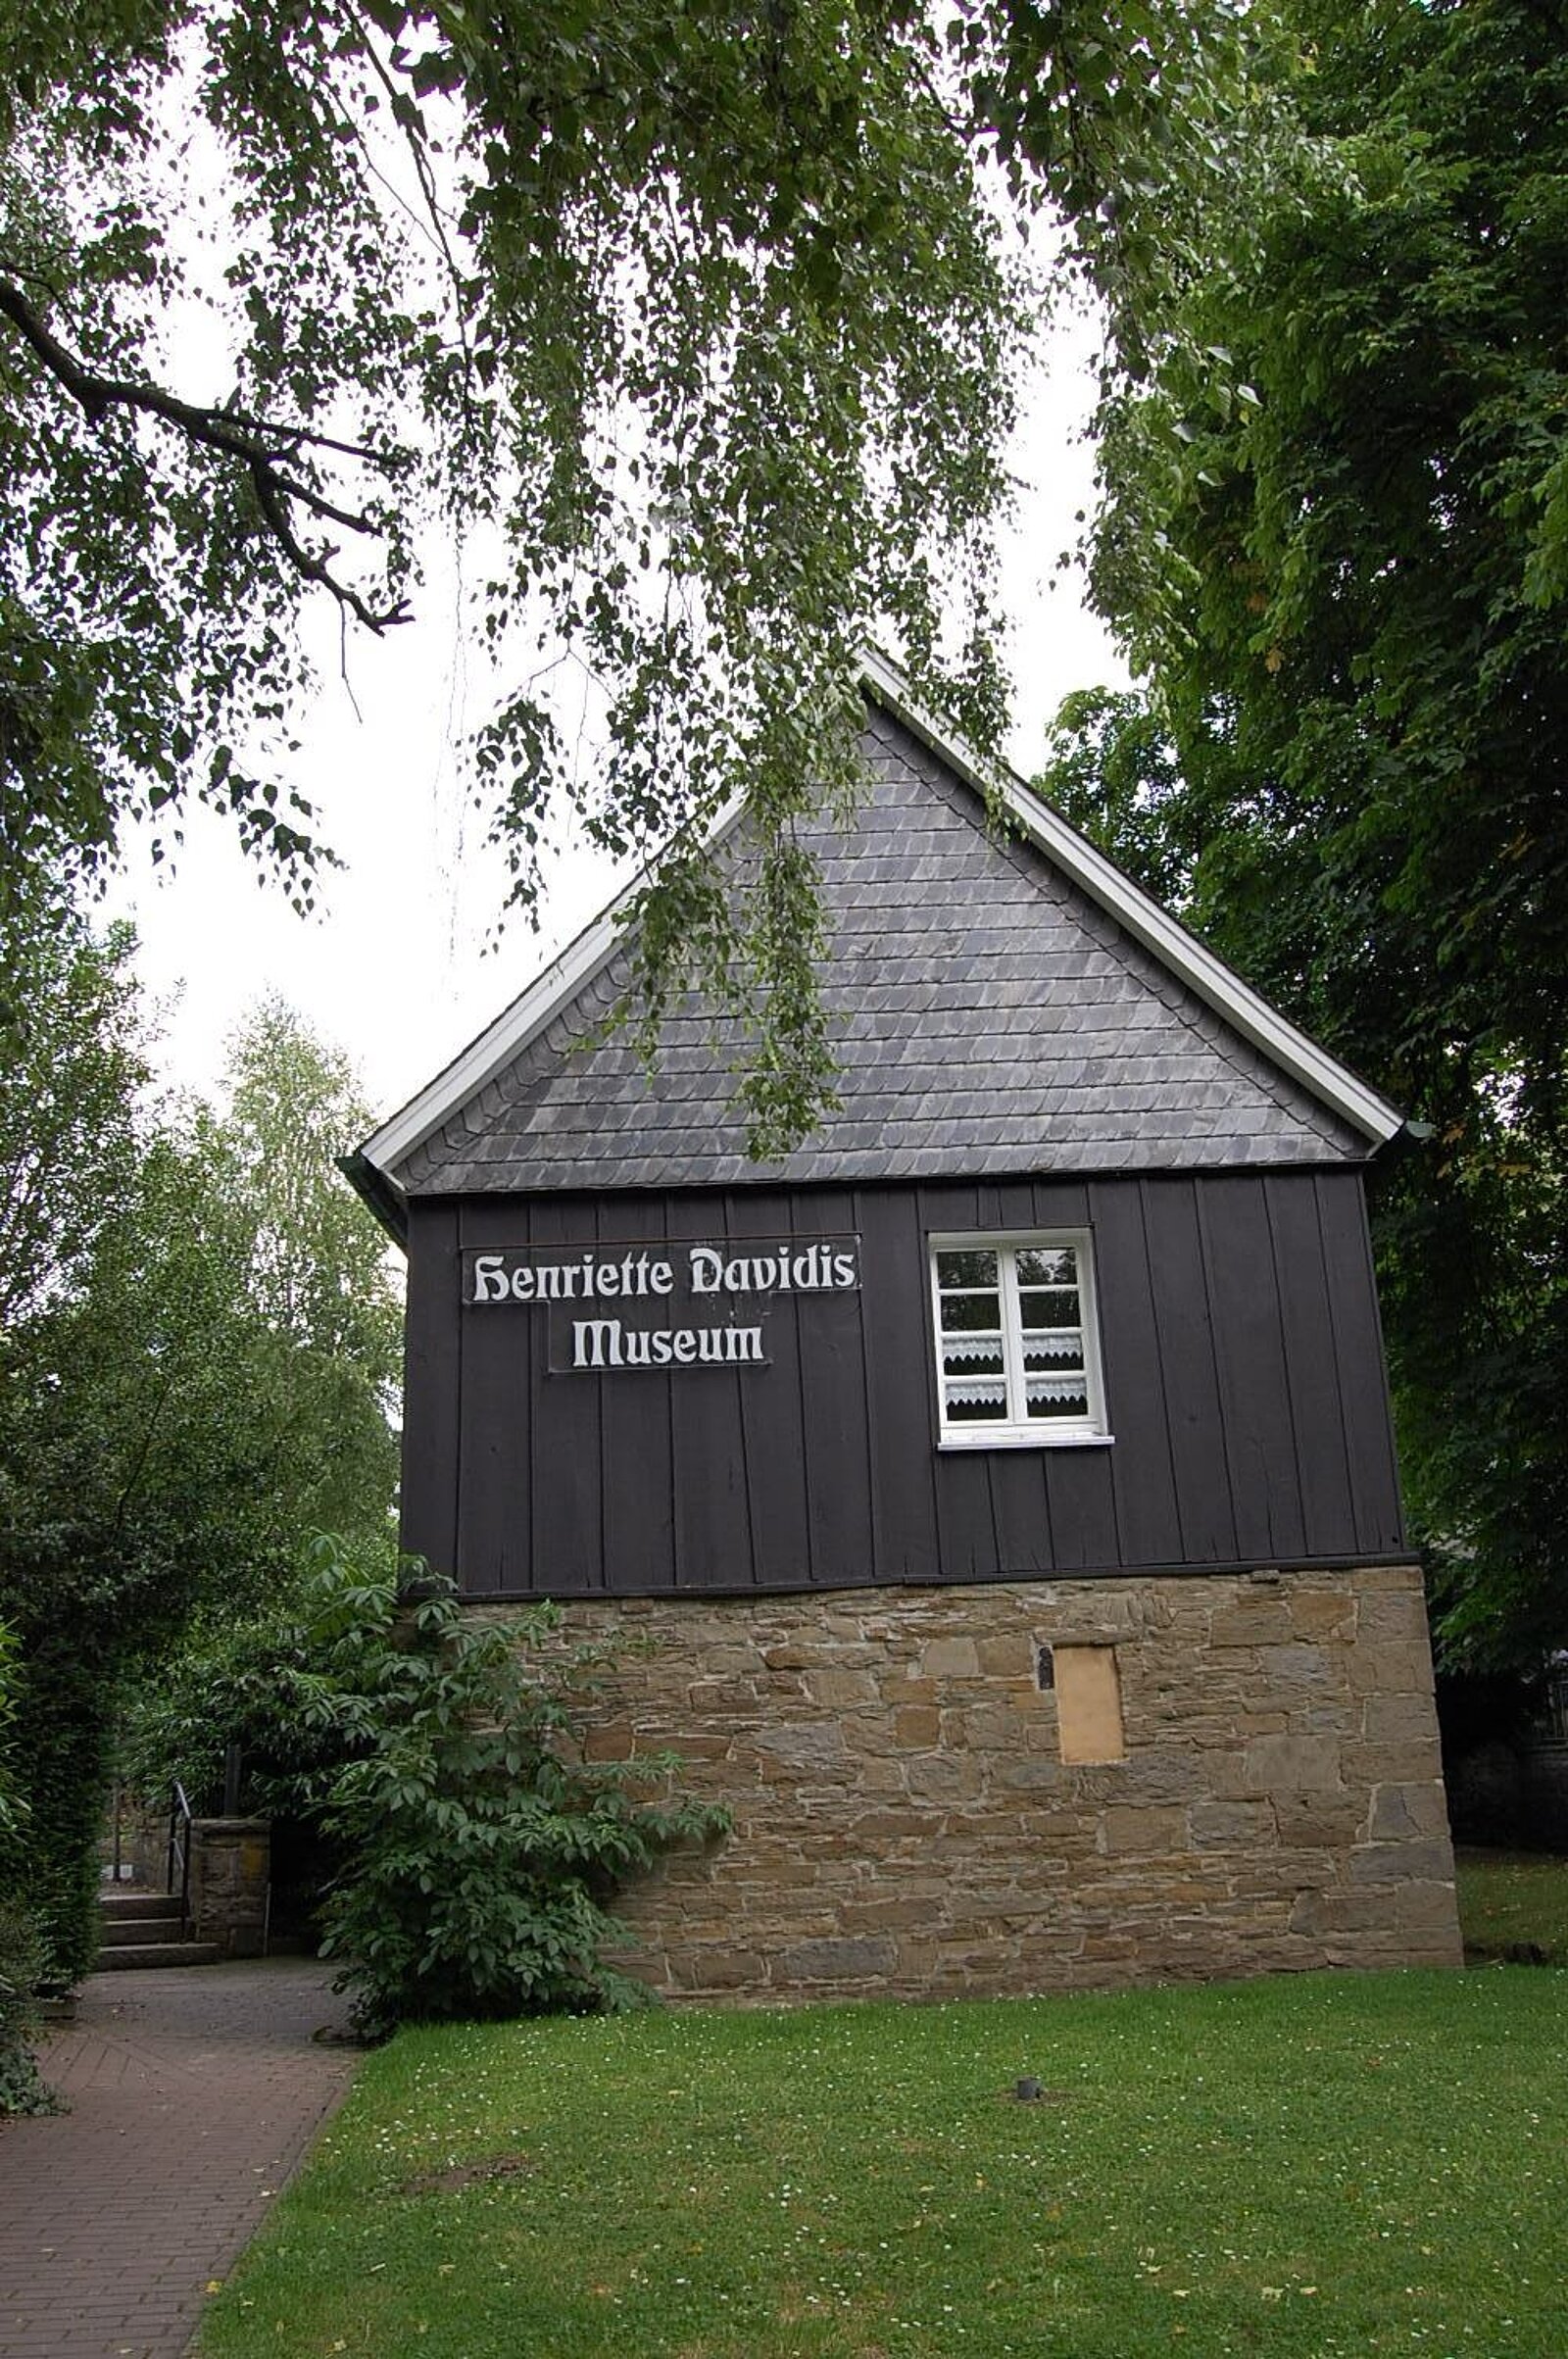 Historisches Haus mit Aufschrift "Henriette-Davidis-Museum"